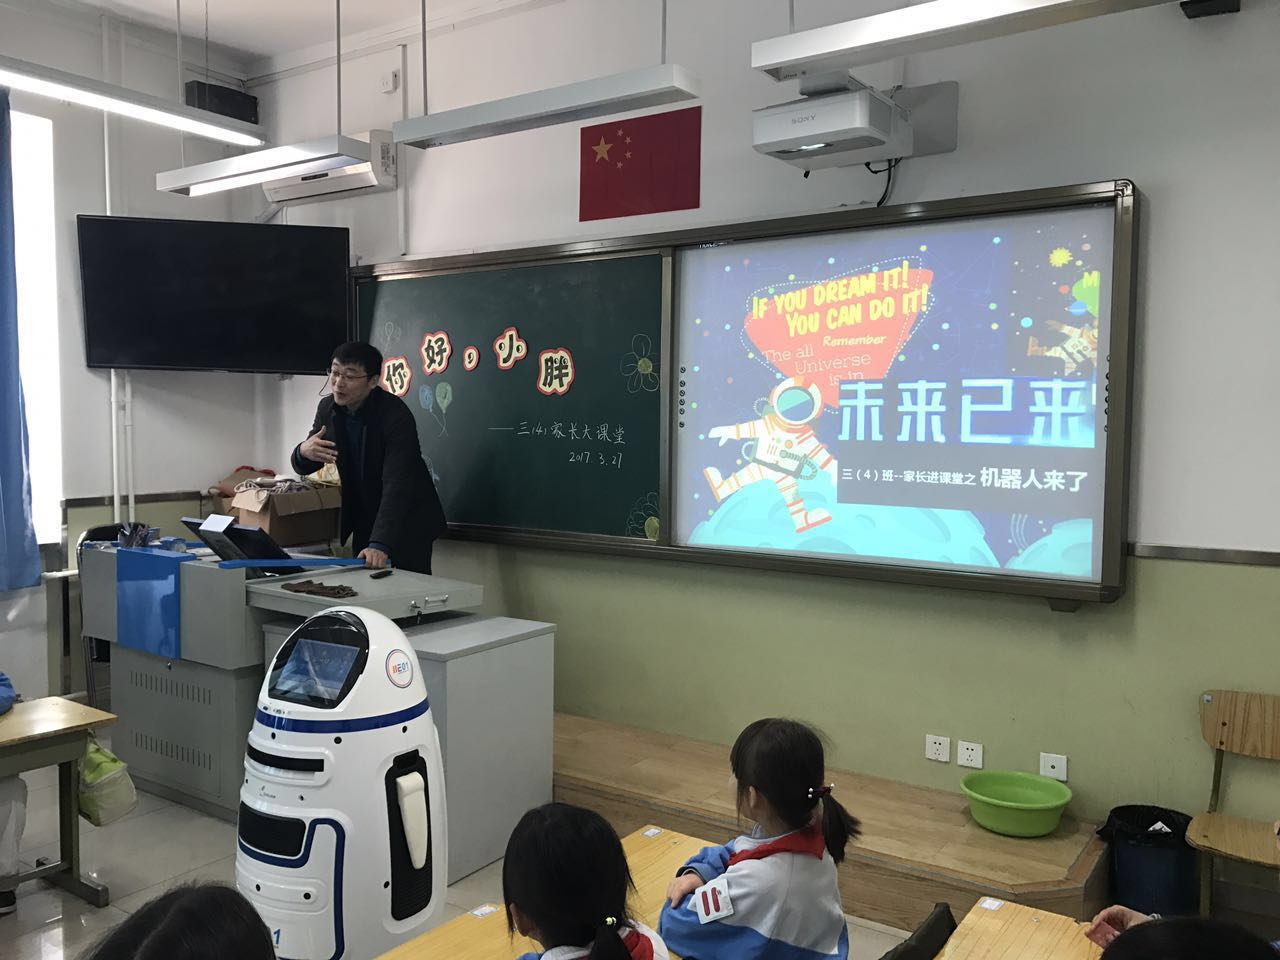 助教机器人在讲课时是不是可以及时的处理学生所遇到的问题呢